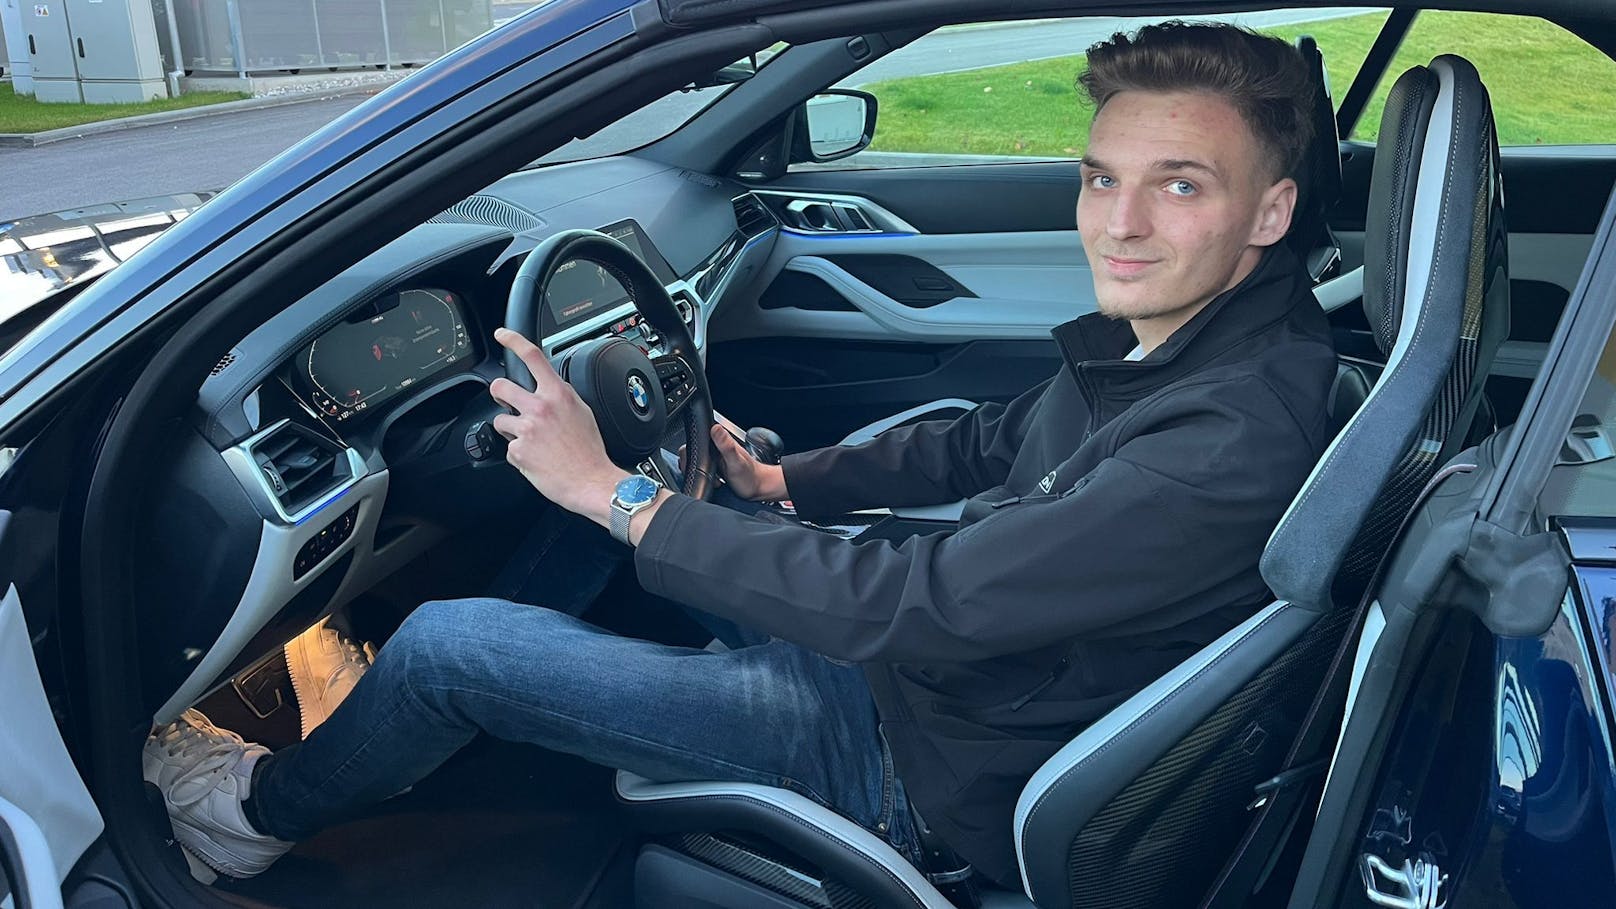 BMW-Fan putzt gerne Autos – jetzt sucht er Blondine